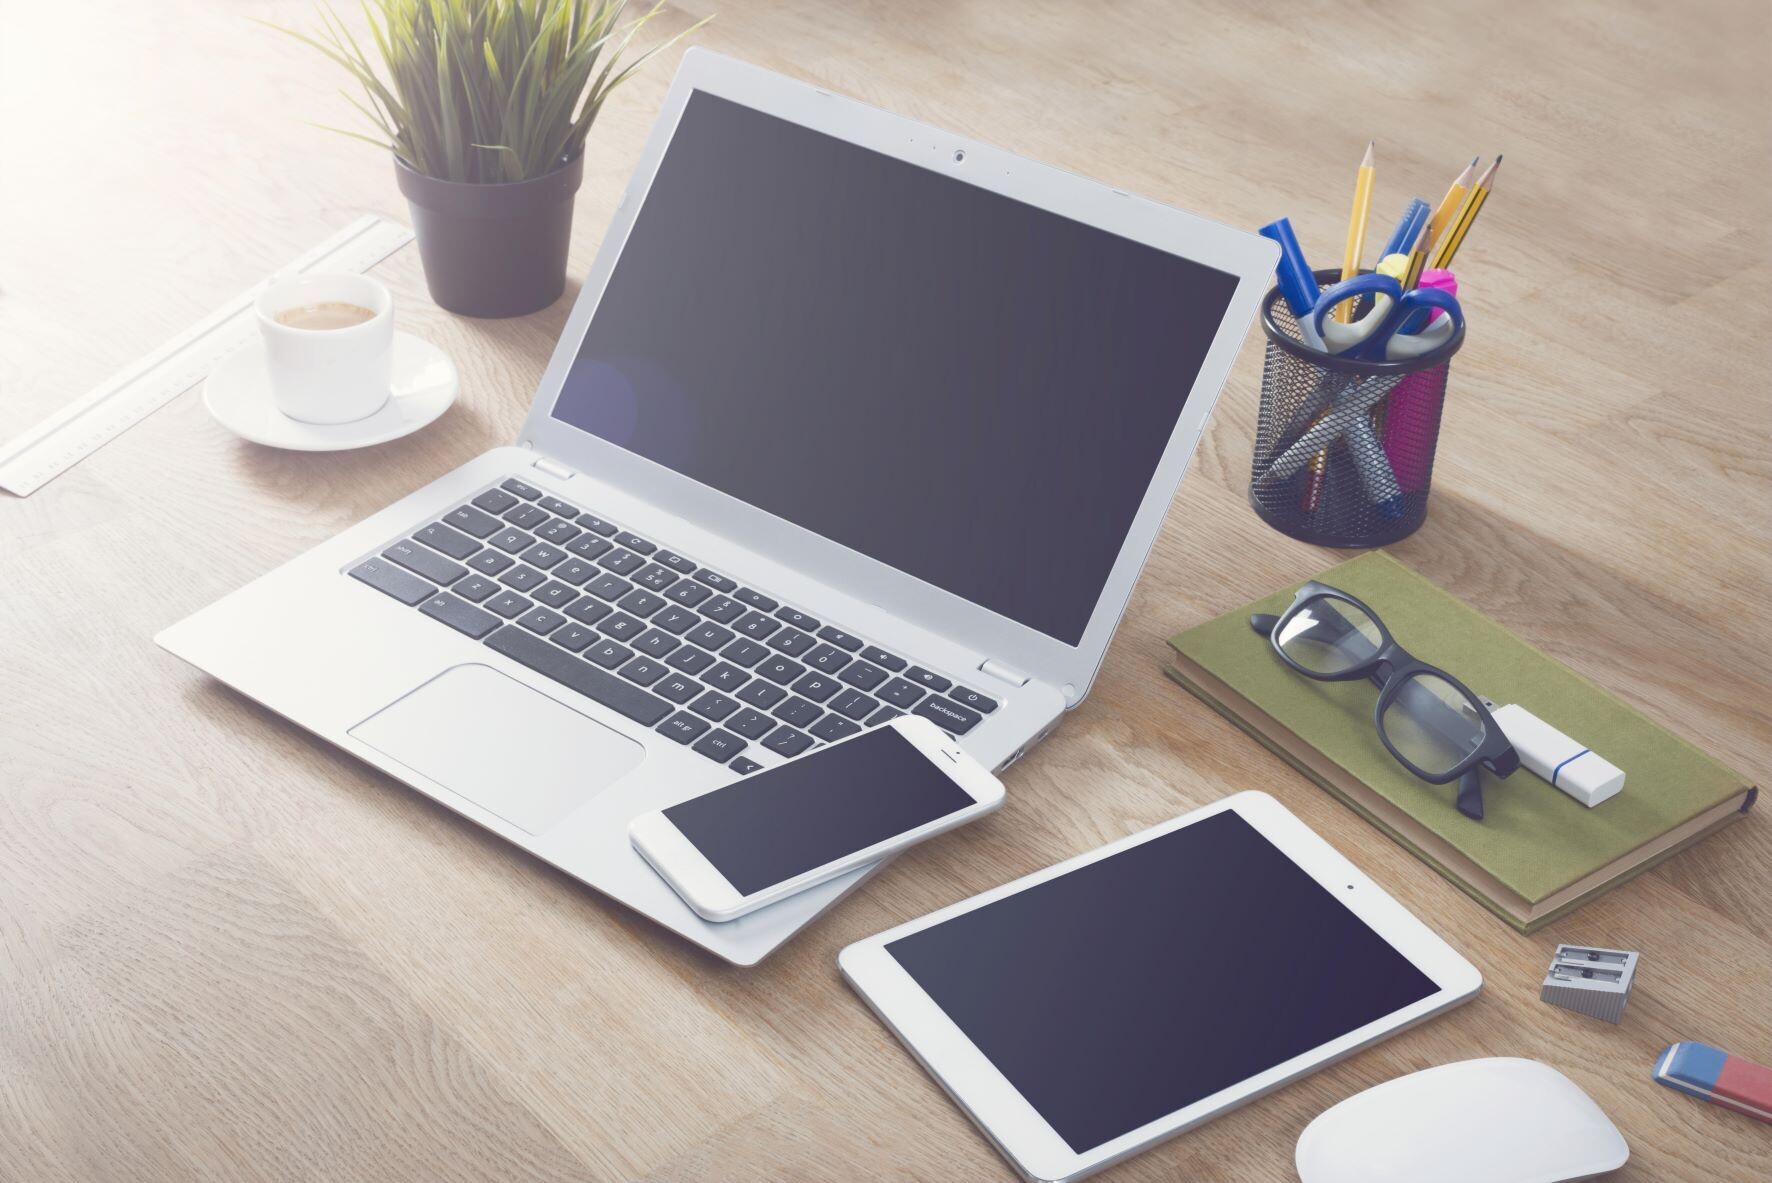 Desk setup with laptop, tablet, smartphone for responsive website design